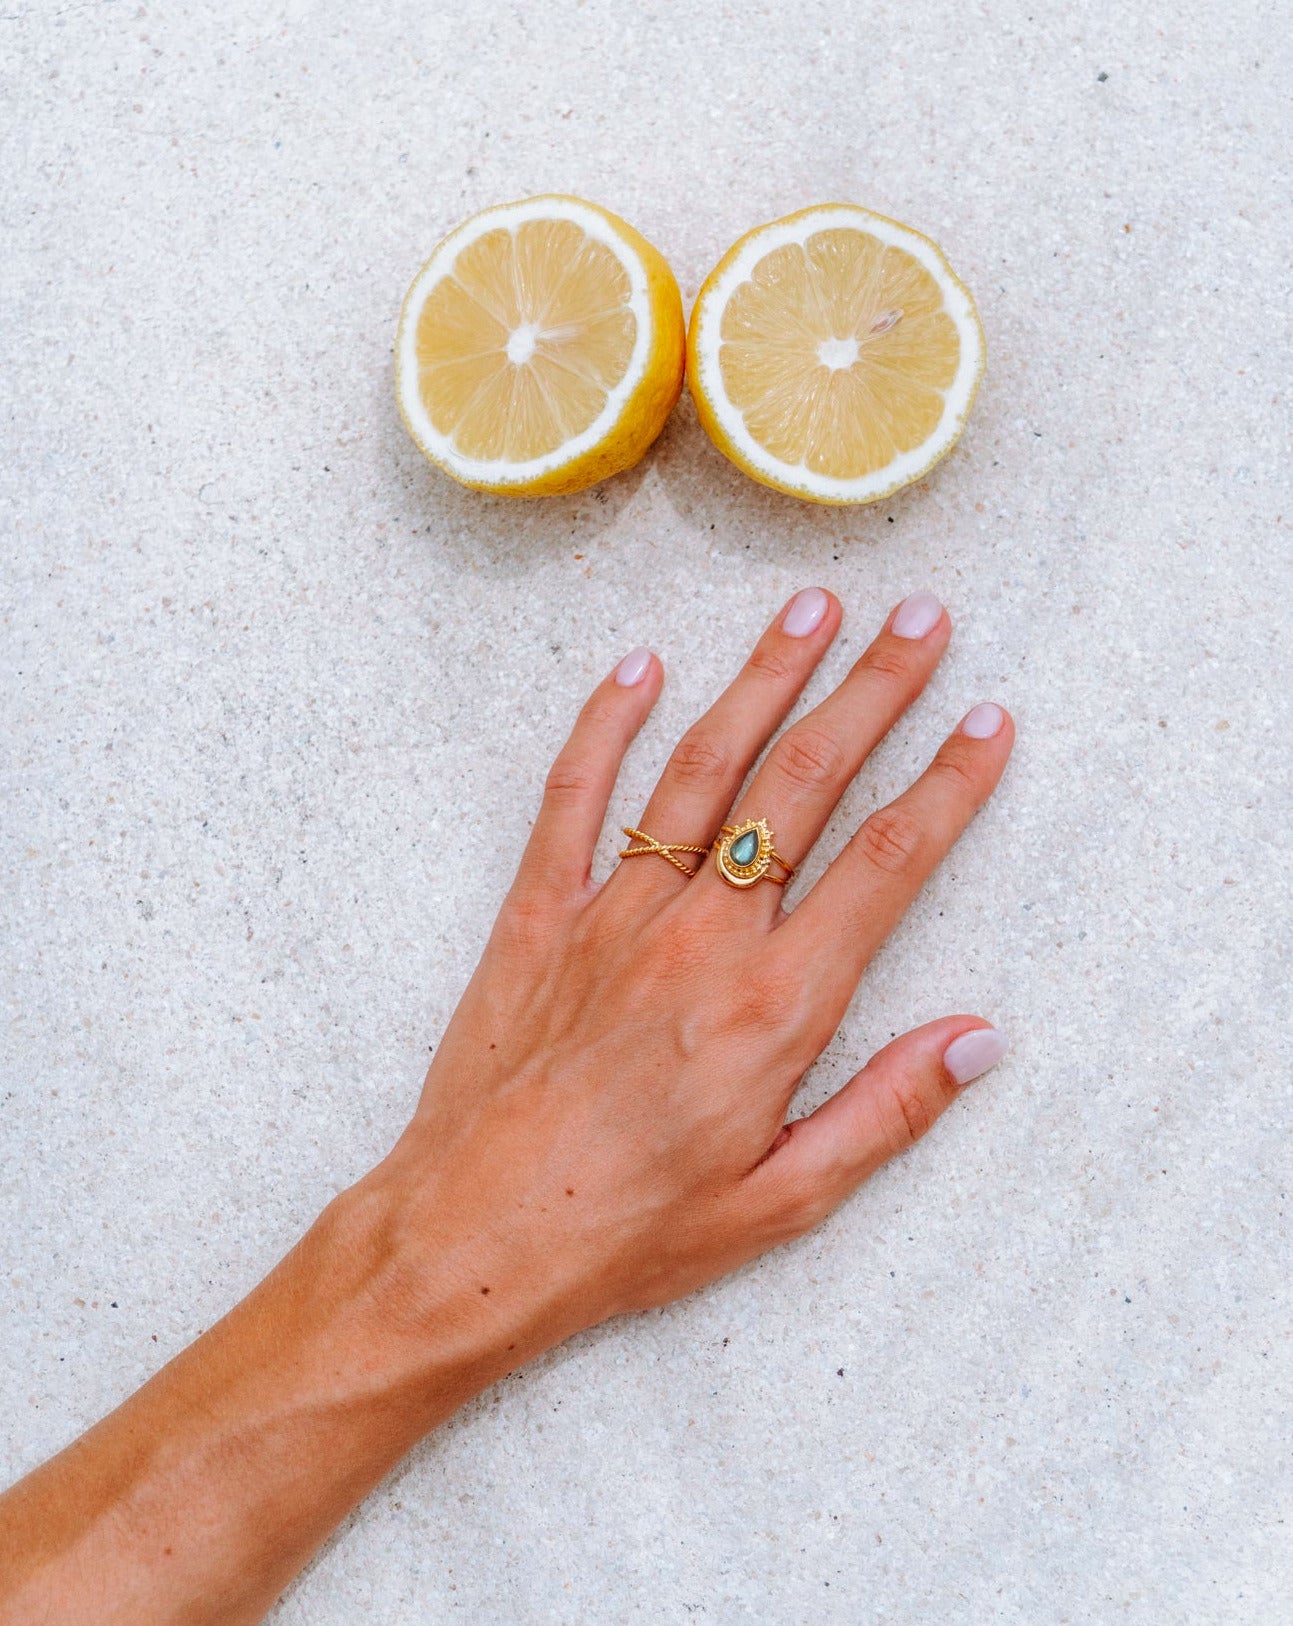 Handmade with love | VERLAN Jewellery | Fairfashion | Handgemachte Ringe im Boho Look aus Bali | Fair und nachhaltig handgefertigter Schmuck | Verstellbarer Ring | Kombi & adjustable Ring | vergoldet | pandawa ring | zitronen